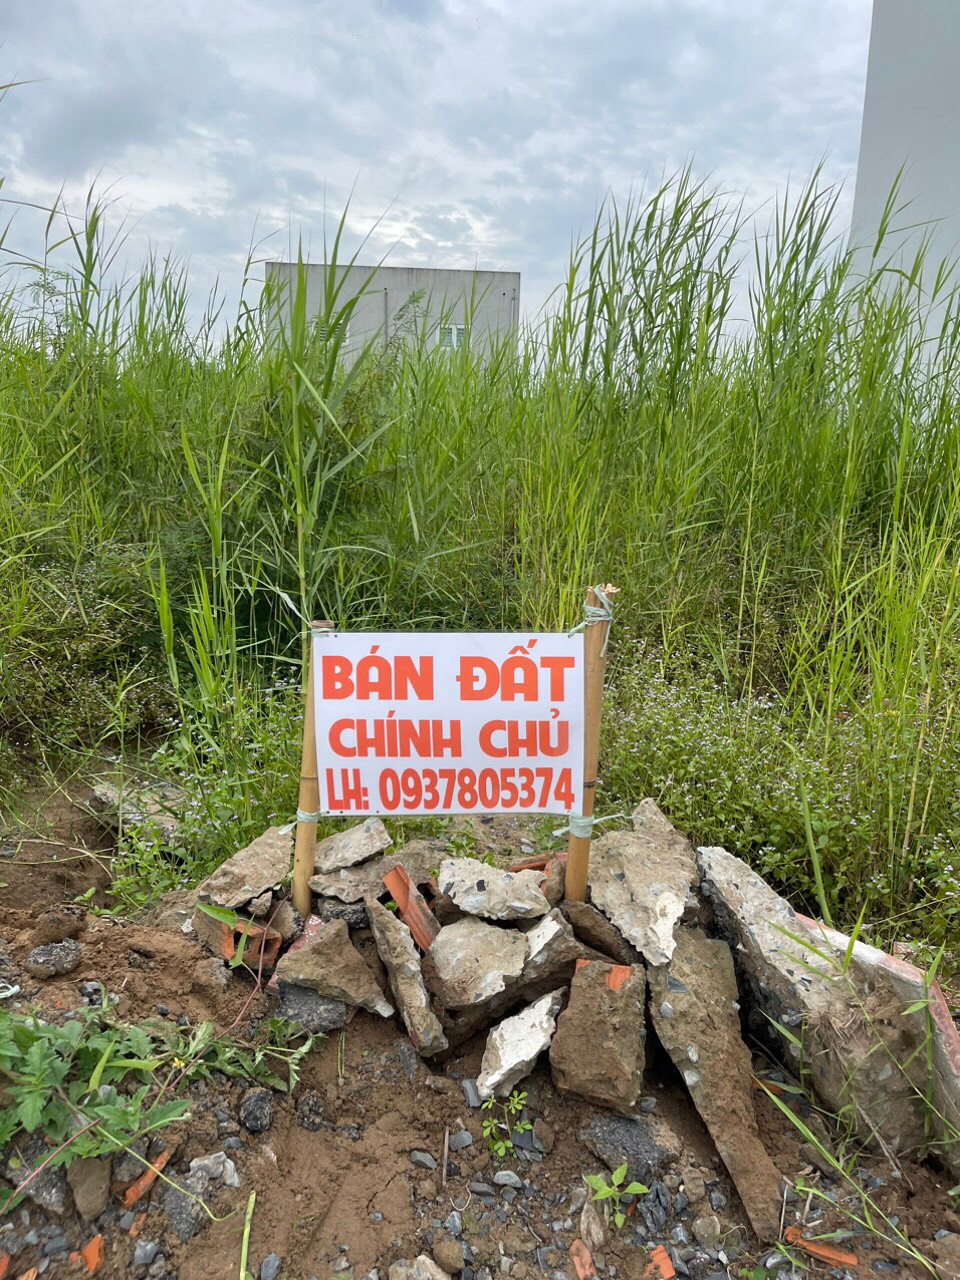 Chính chủ cần bán lô đất tại xã Tân Lân, huyện Cần Đước, tỉnh Long An - Ảnh 4